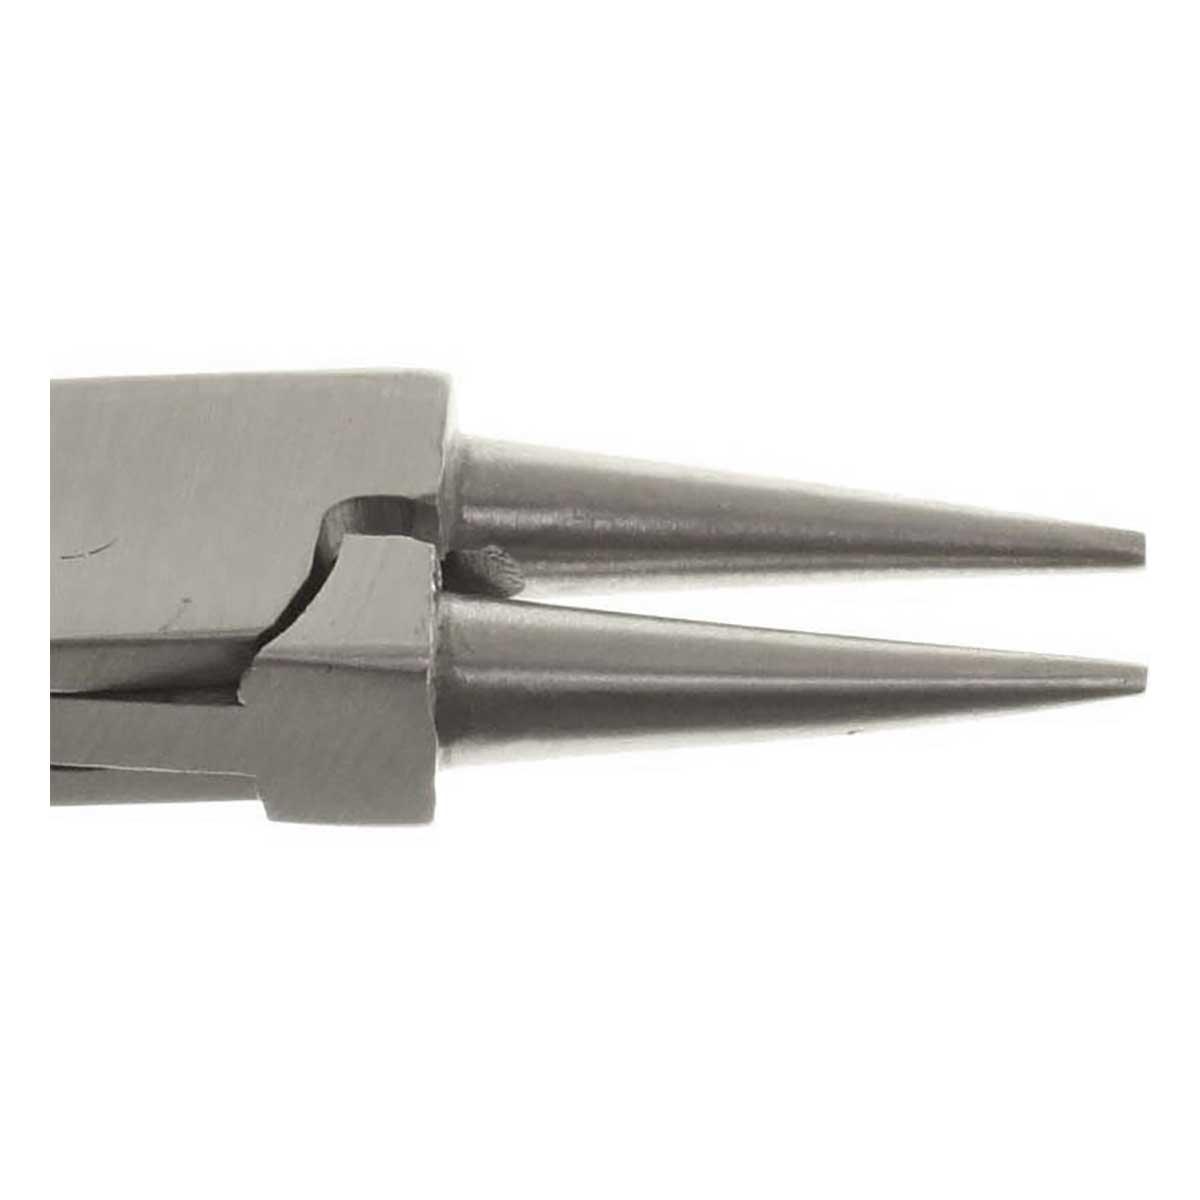 Round Nose Pro Grade Precision Pliers, 5 inch